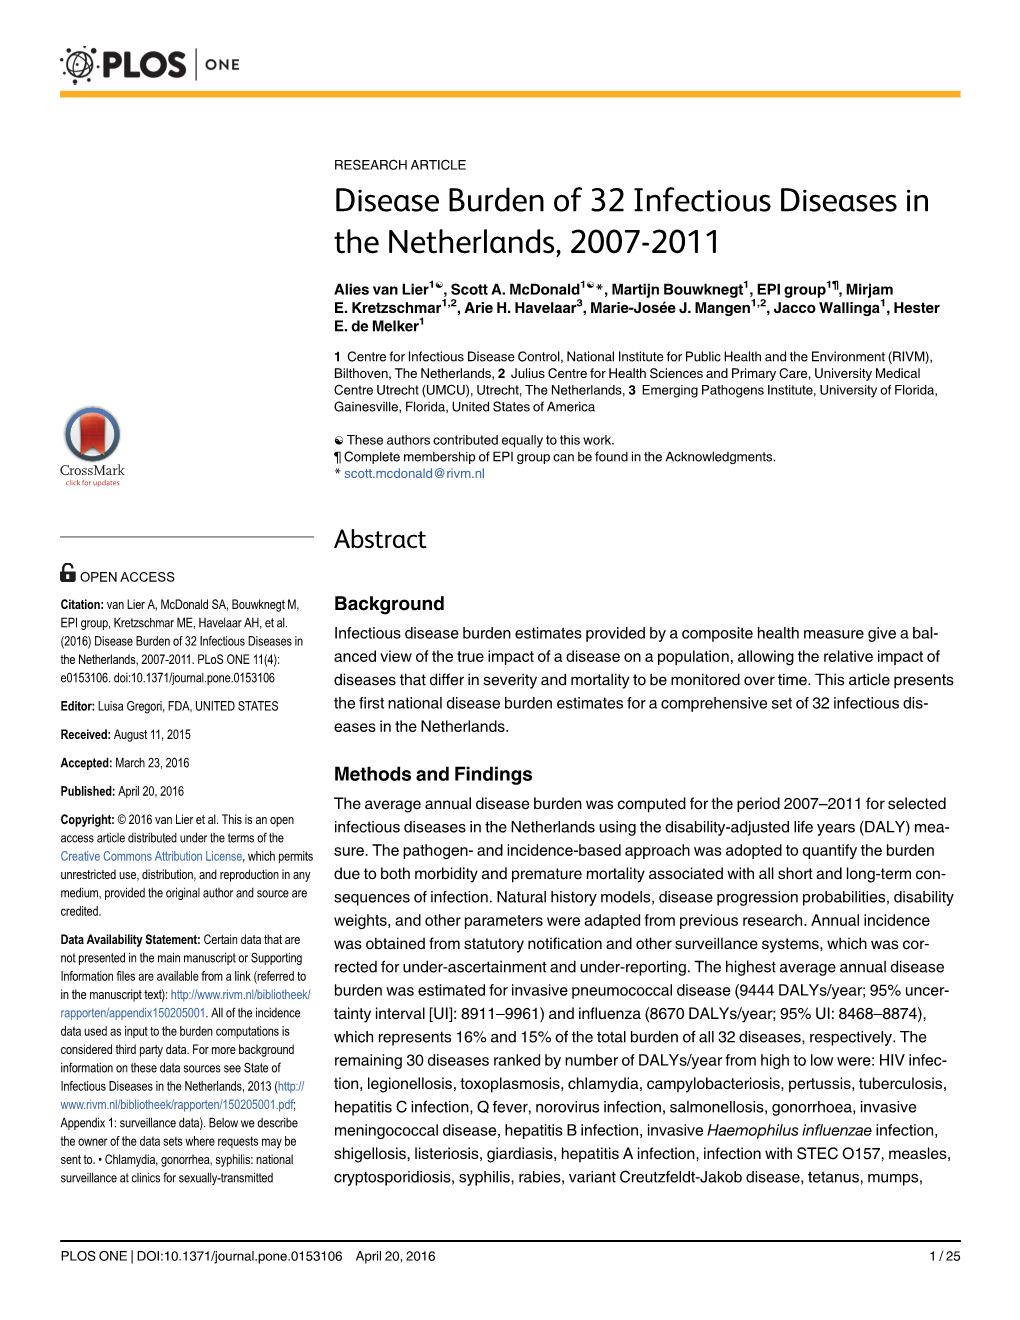 Disease Burden of 32 Infectious Diseases in the Netherlands, 2007-2011